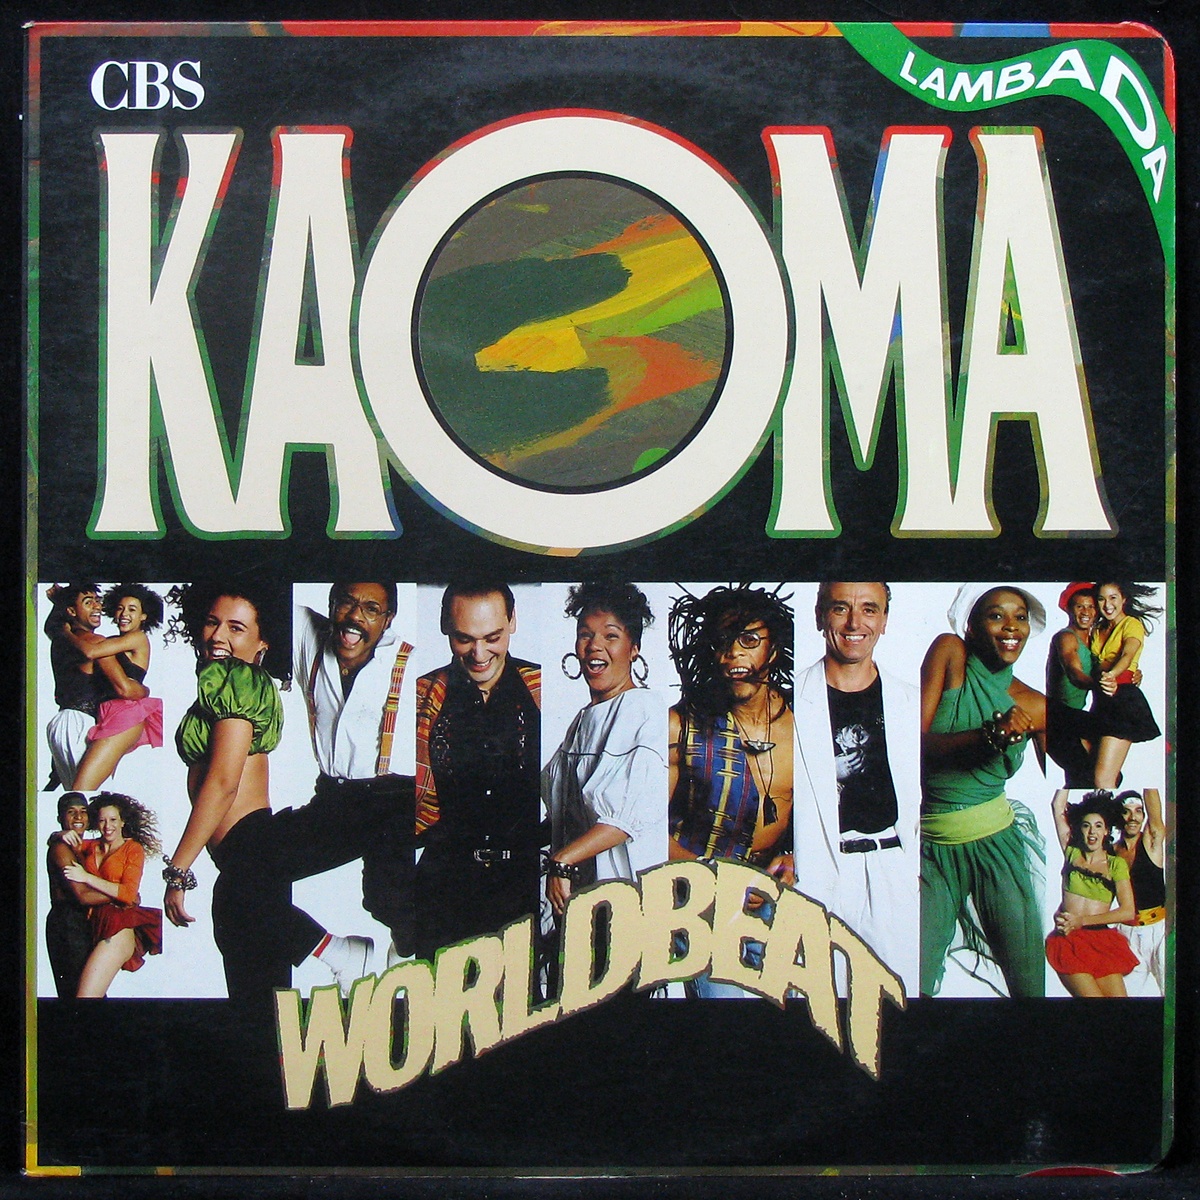 LP Kaoma — Worldbeat фото